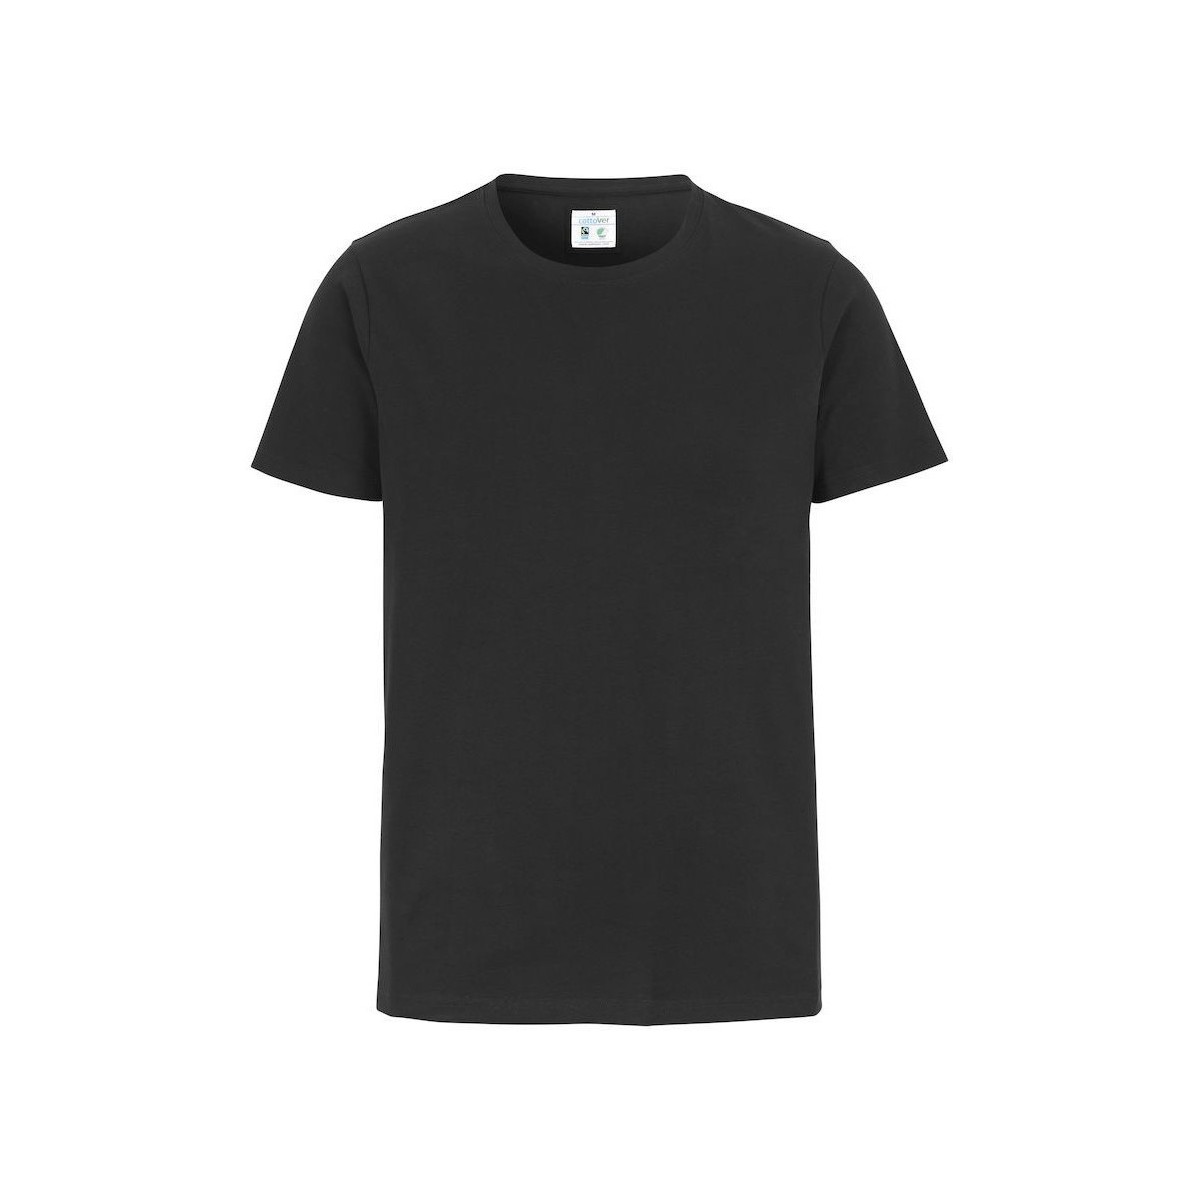 Vêtements Homme T-shirts manches longues Cottover UB296 Noir